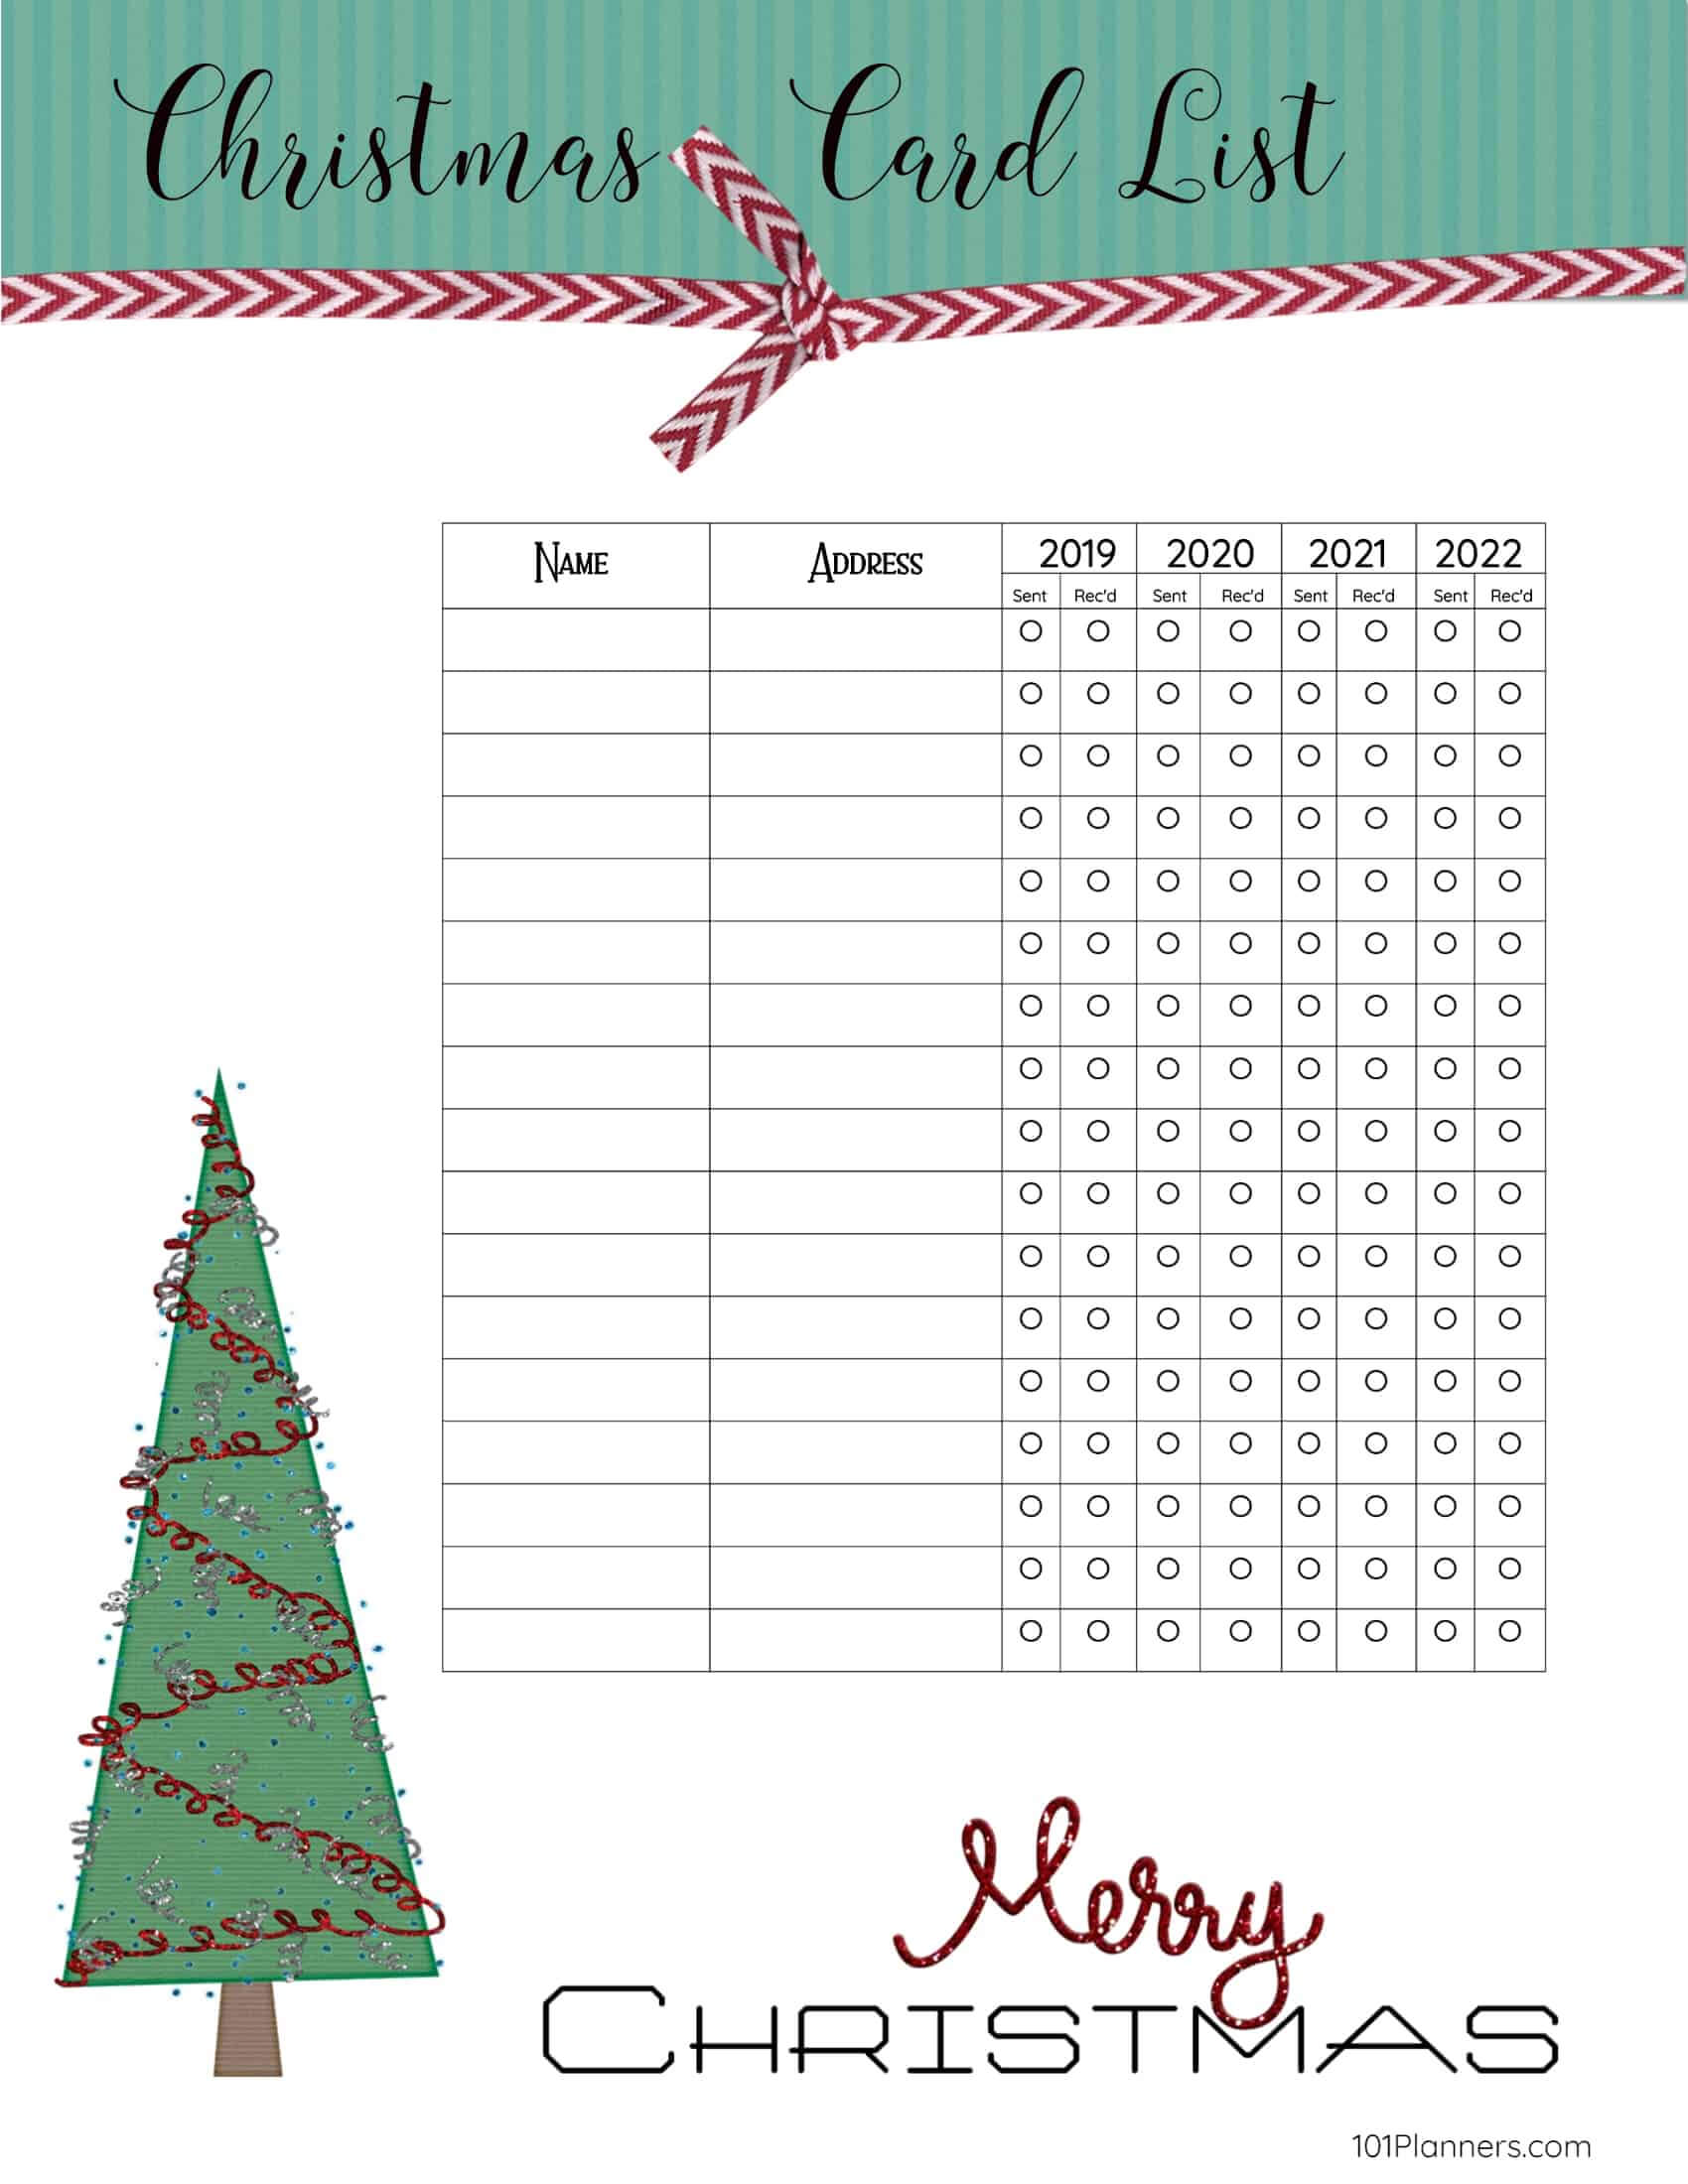 Free Printable Christmas Gift List Template With Christmas Card List Template